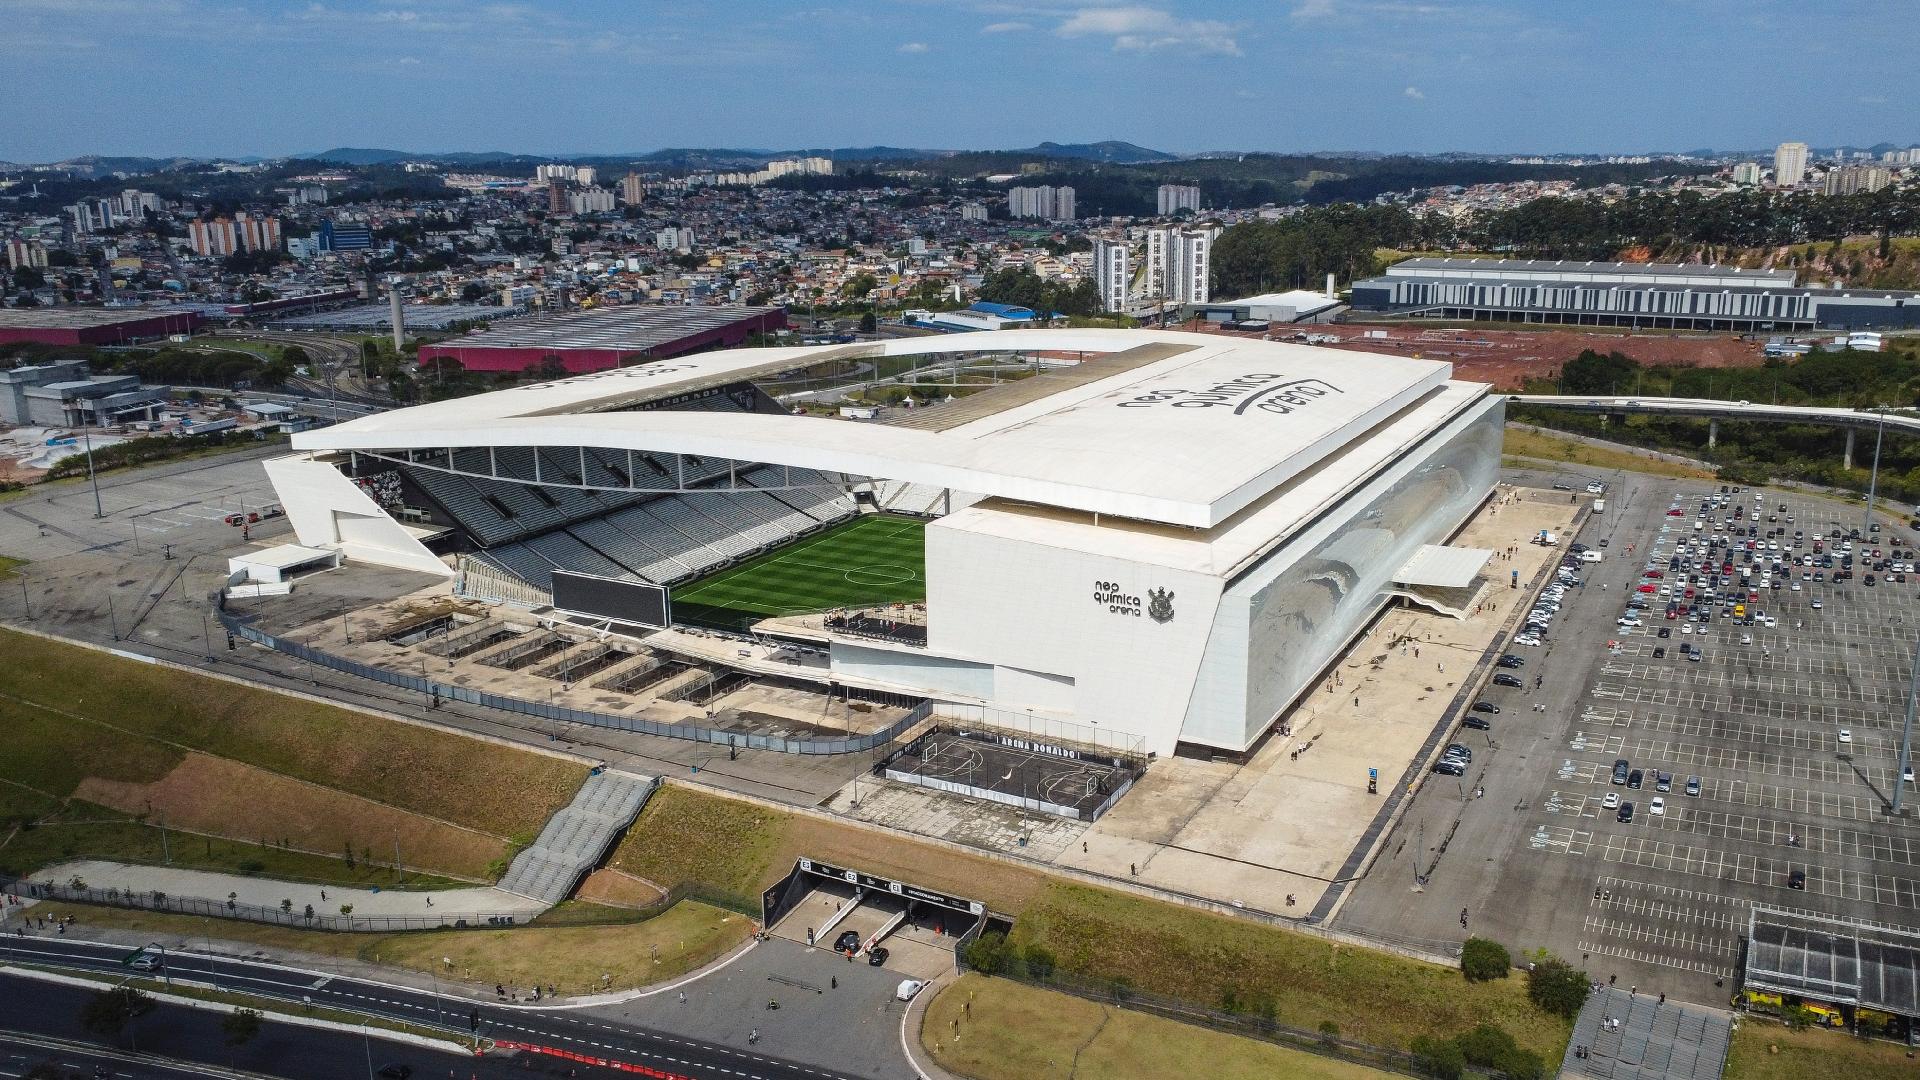 NFL no Brasil: Estádio do Corinthians recebe jogo de futebol americano em  2024 - Quinto Quarto